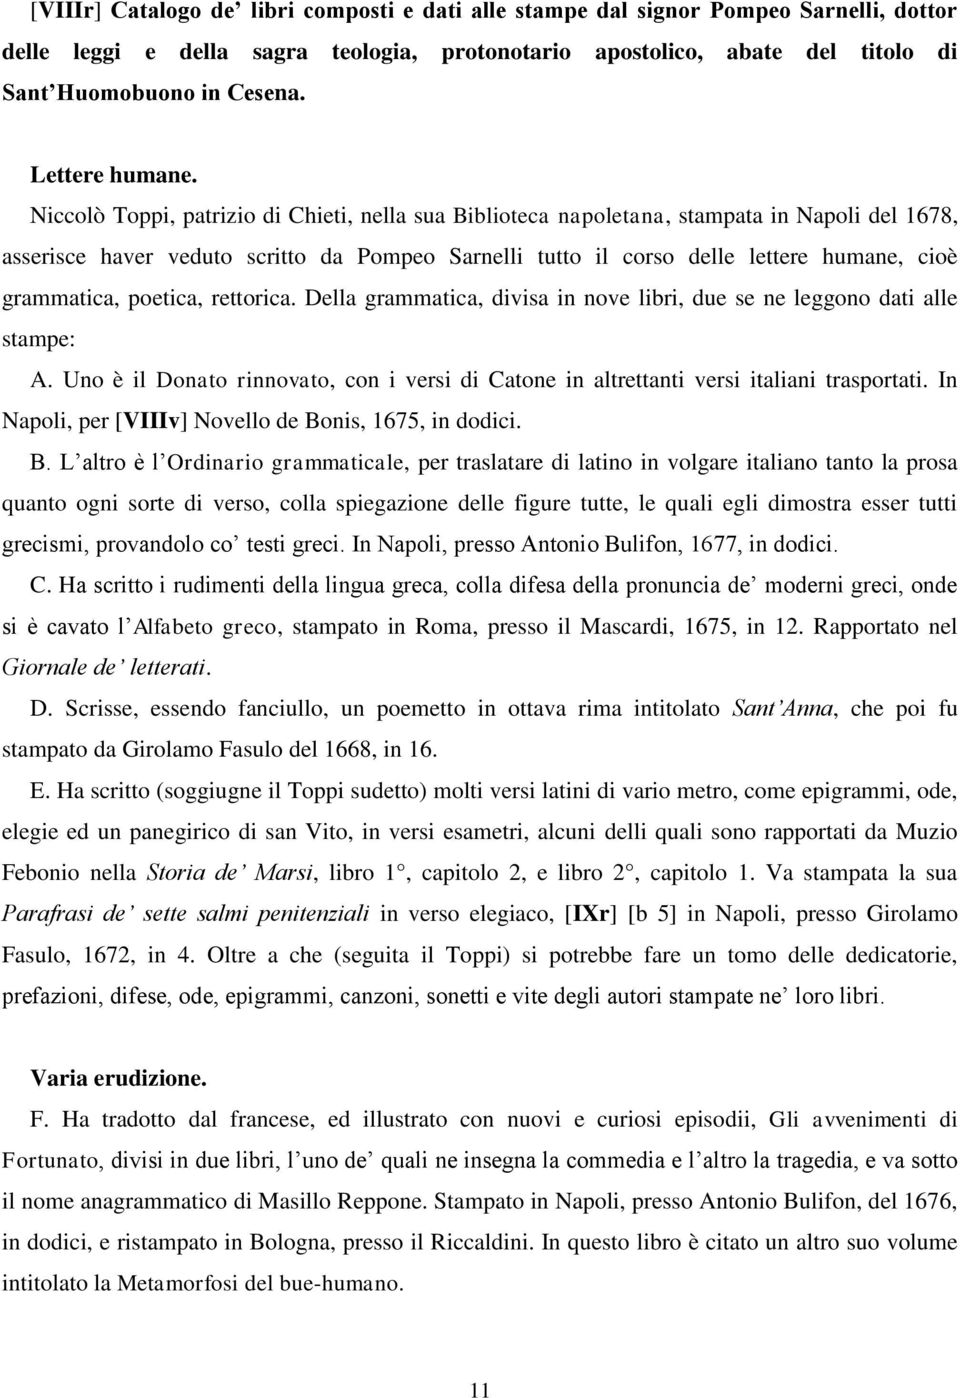 Niccolò Toppi, patrizio di Chieti, nella sua Biblioteca napoletana, stampata in Napoli del 1678, asserisce haver veduto scritto da Pompeo Sarnelli tutto il corso delle lettere humane, cioè